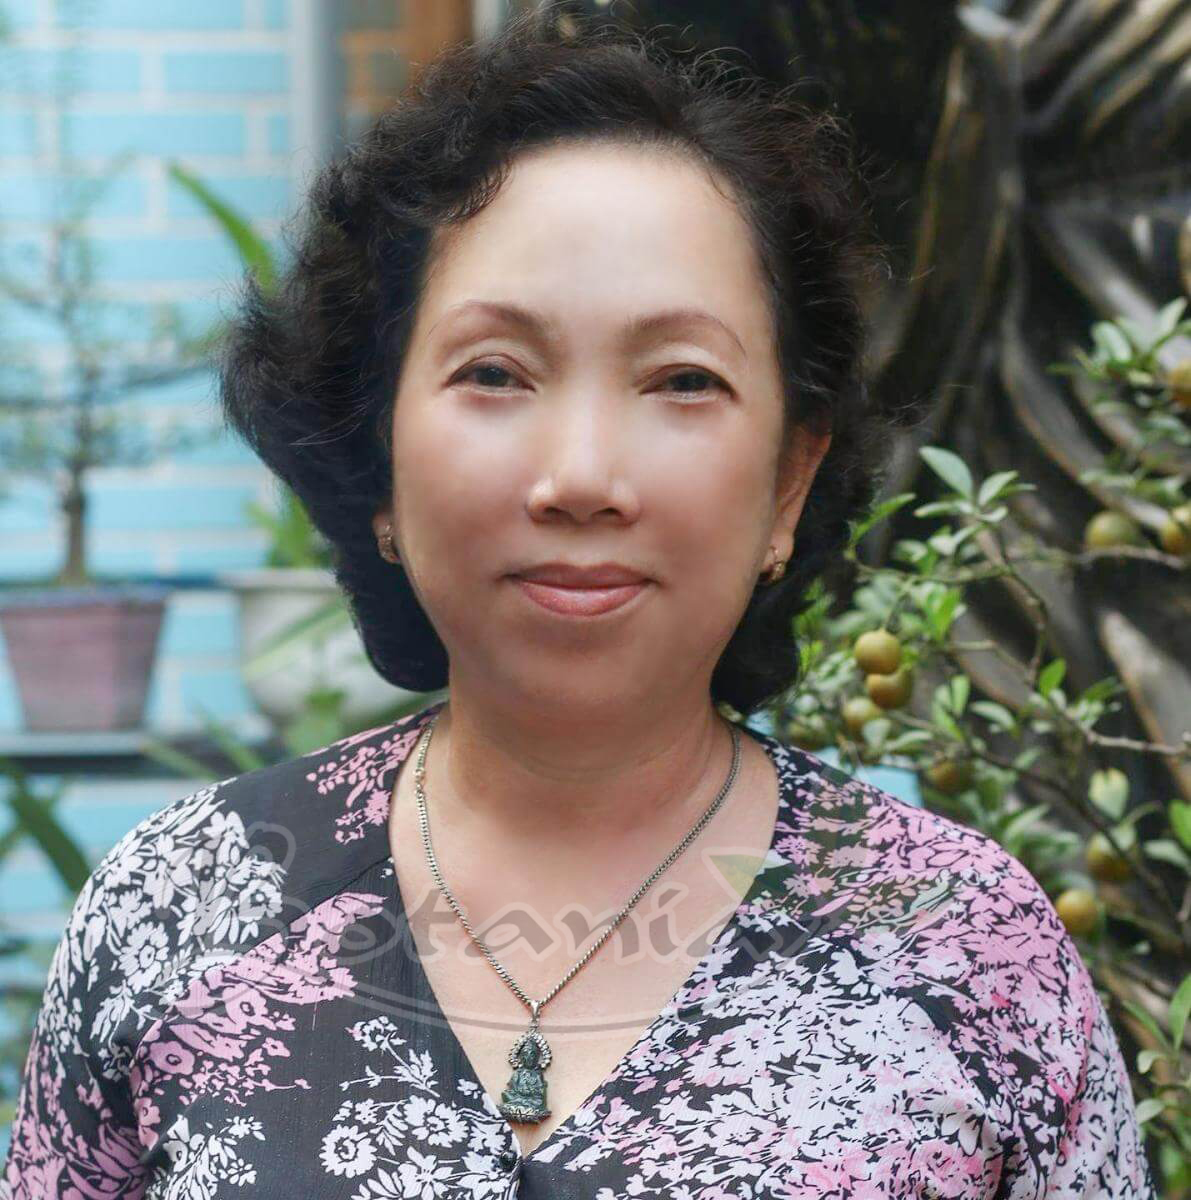 Hồ Chí Minh: Bonihair - Phá vỡ quy luật thời gian, tìm lại mái tóc đen ở tuổi 57!